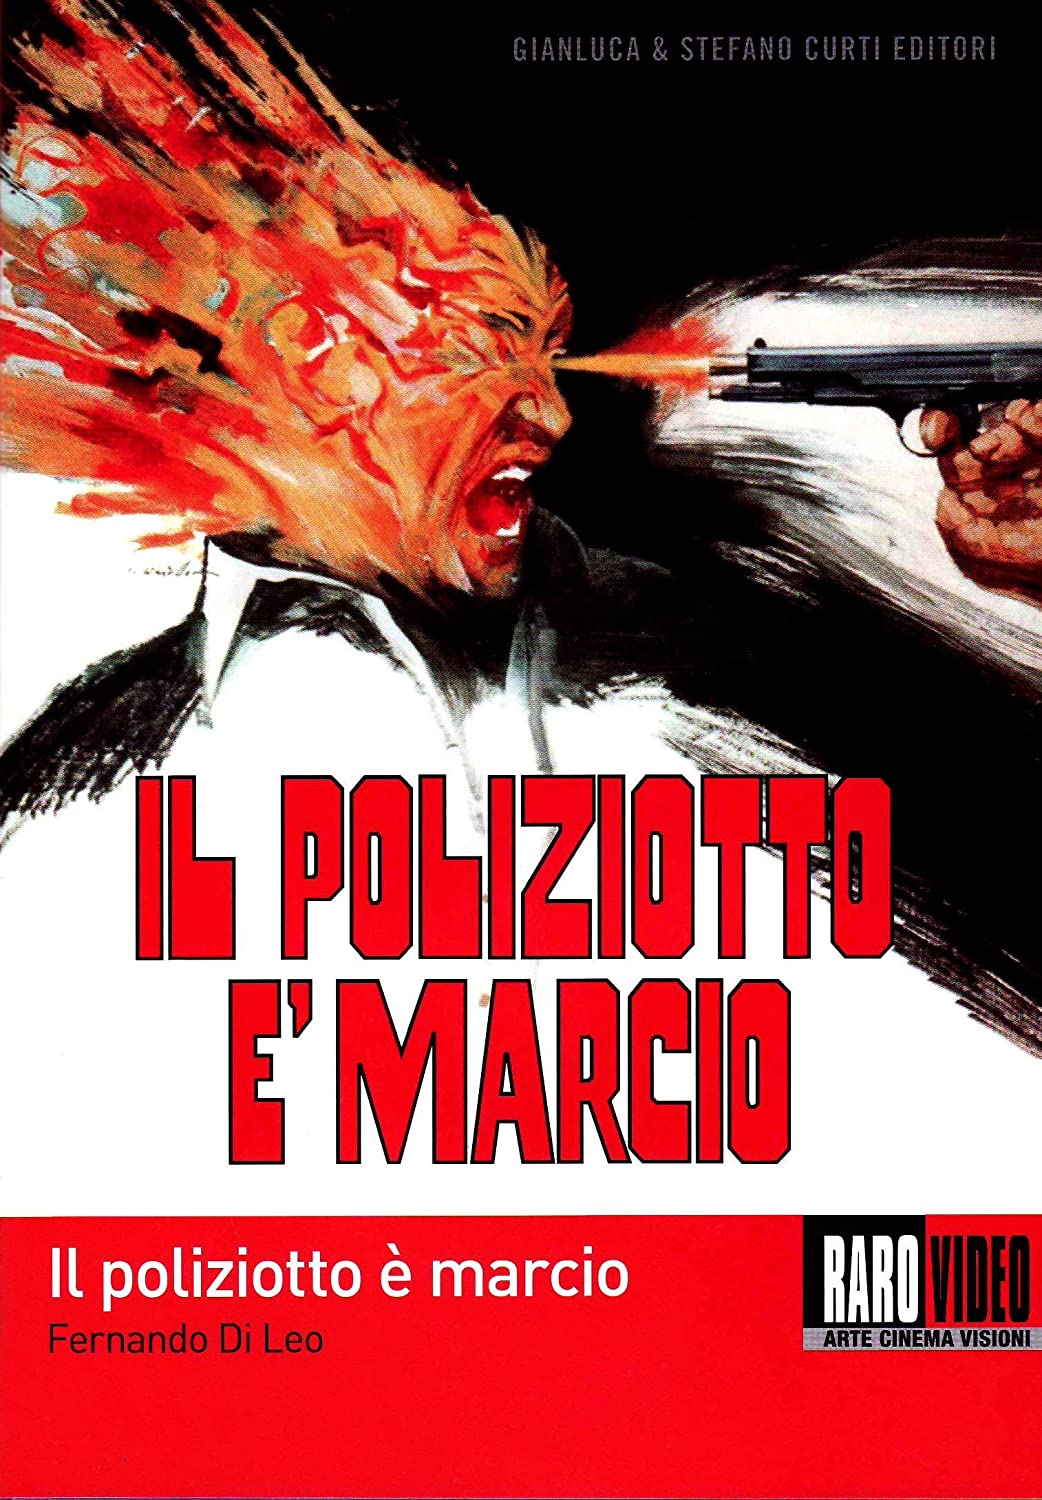 Il poliziotto è marcio [HD] (1974)